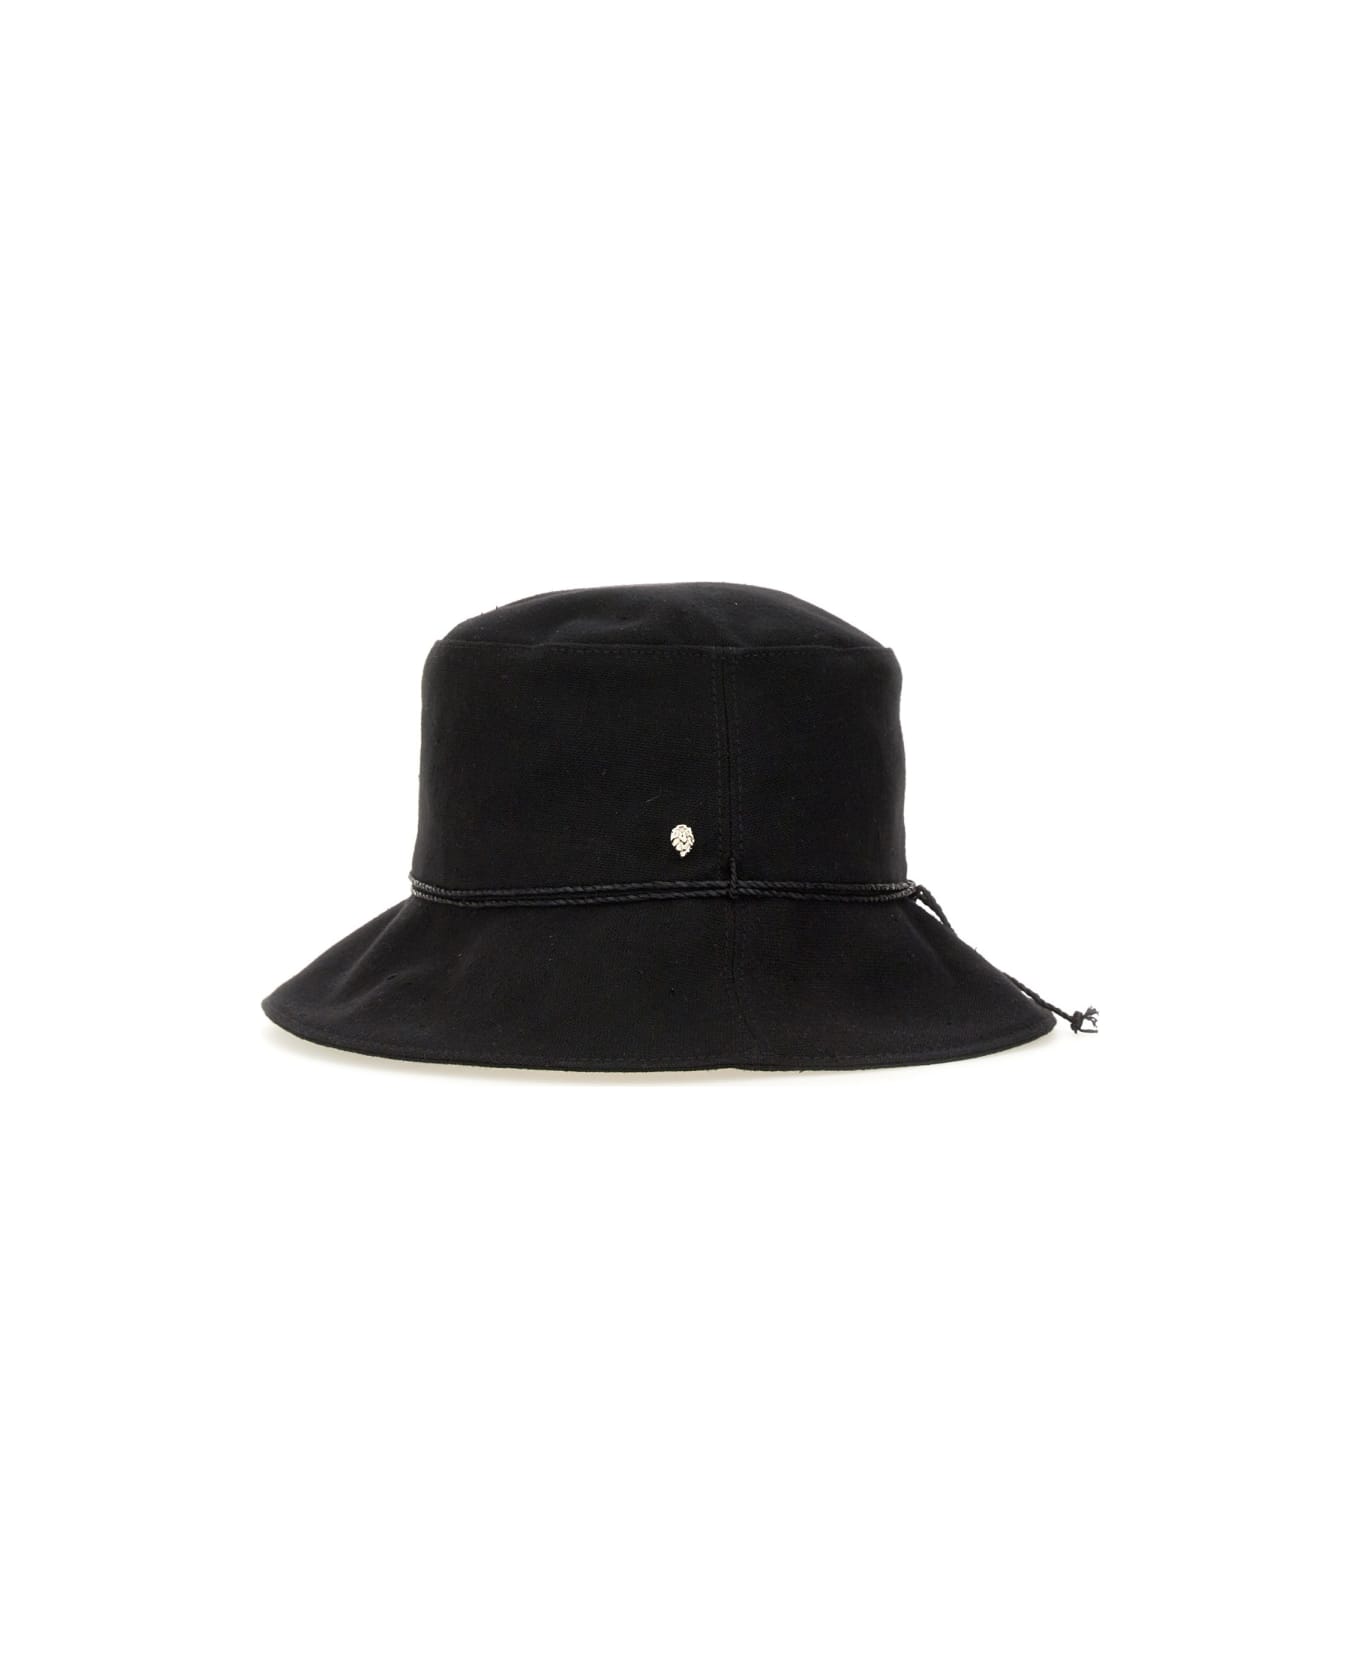 Helen Kaminski Hat "sundar" - BLACK